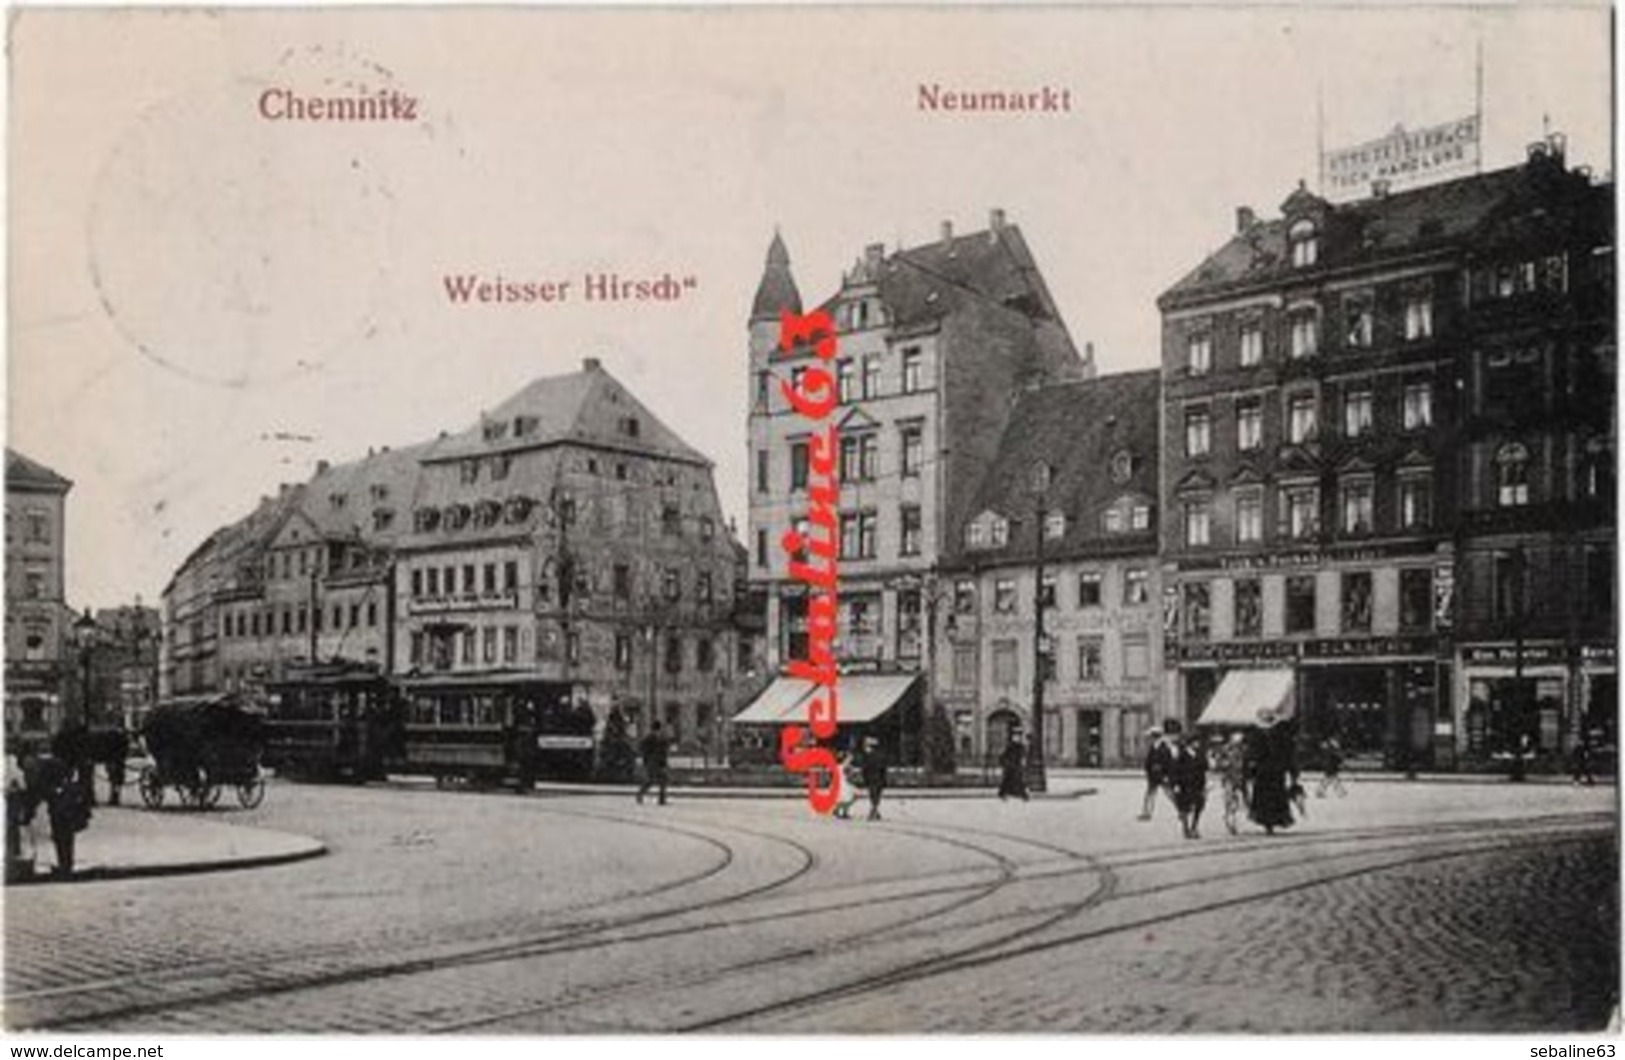 Chemnitz - Neumarkt - Chemnitz